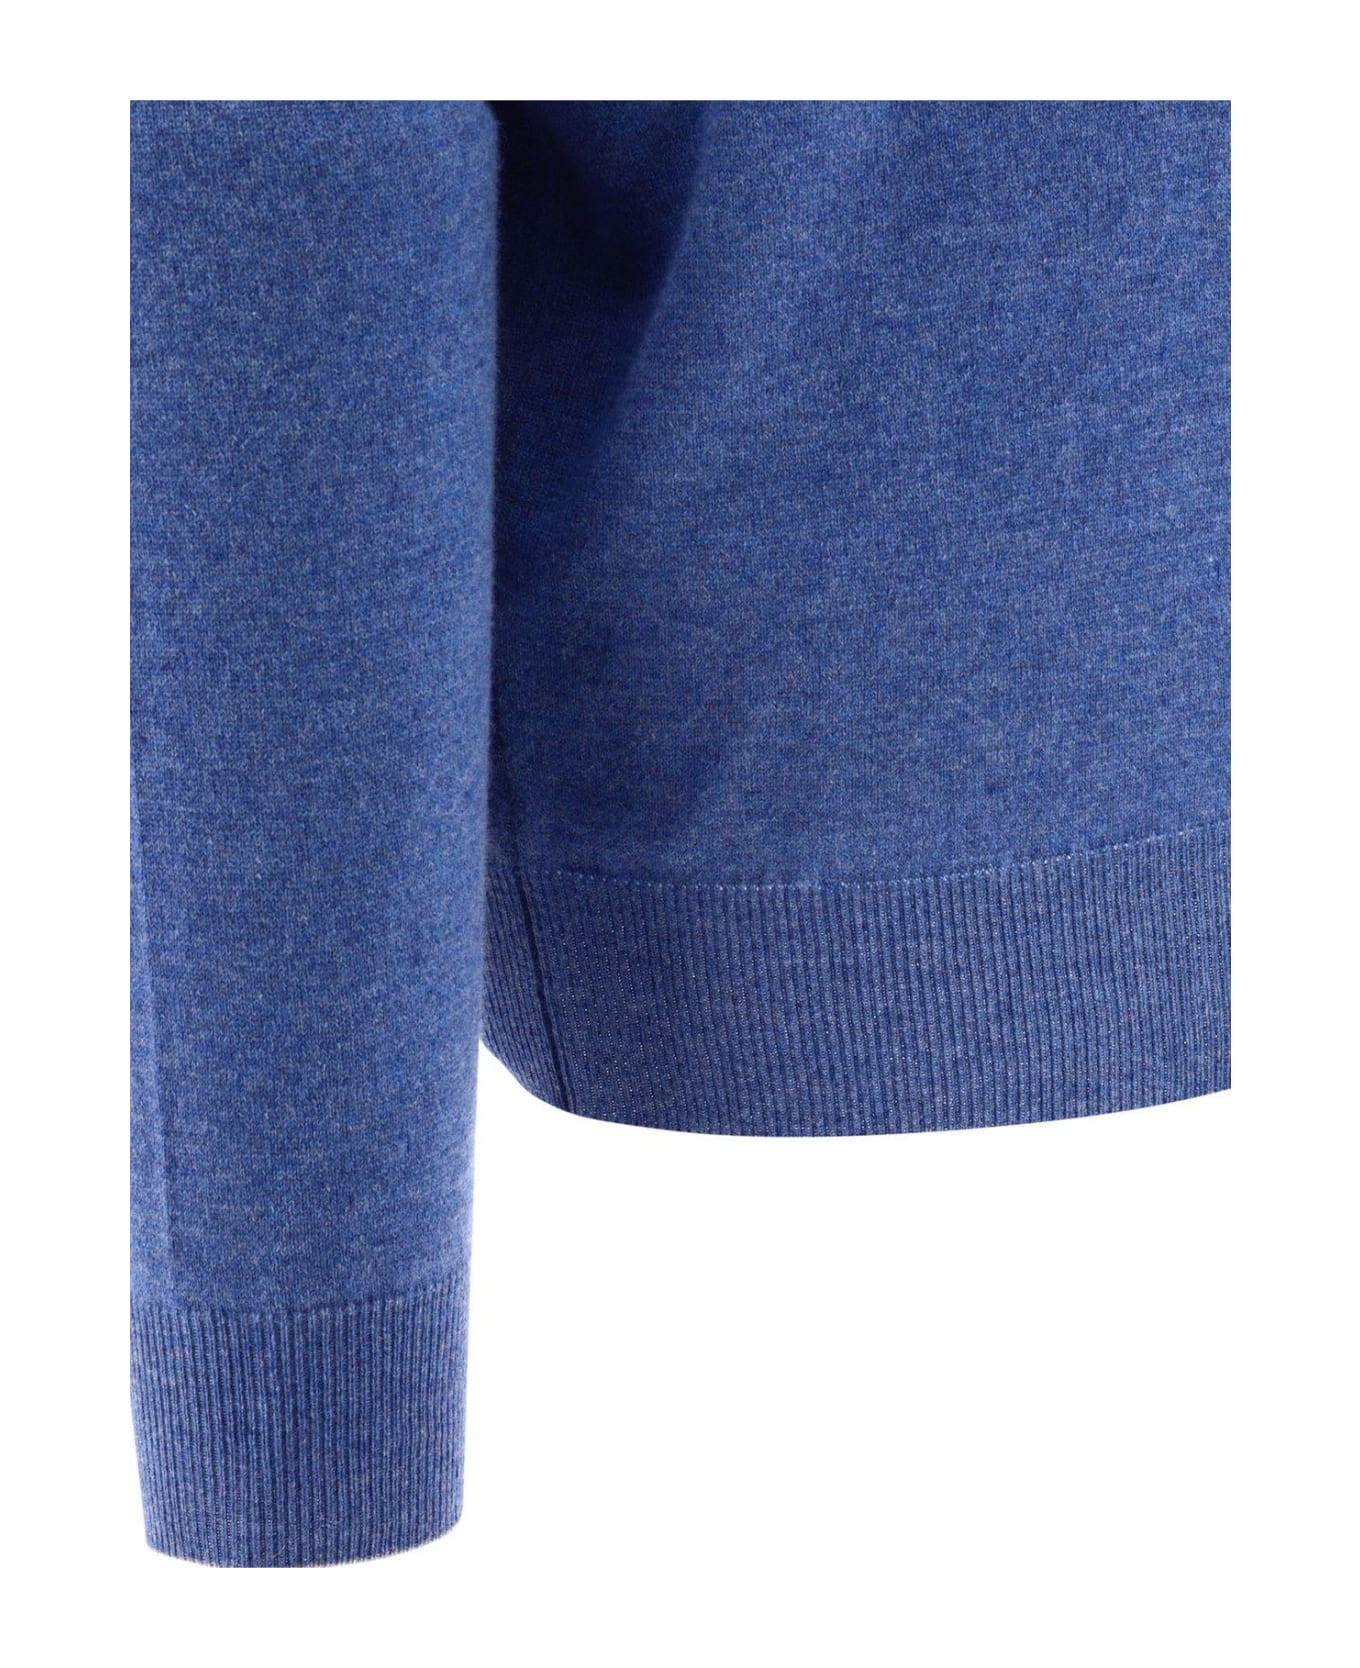 Brunello Cucinelli Cashmere Sweater - Azzurro ニットウェア